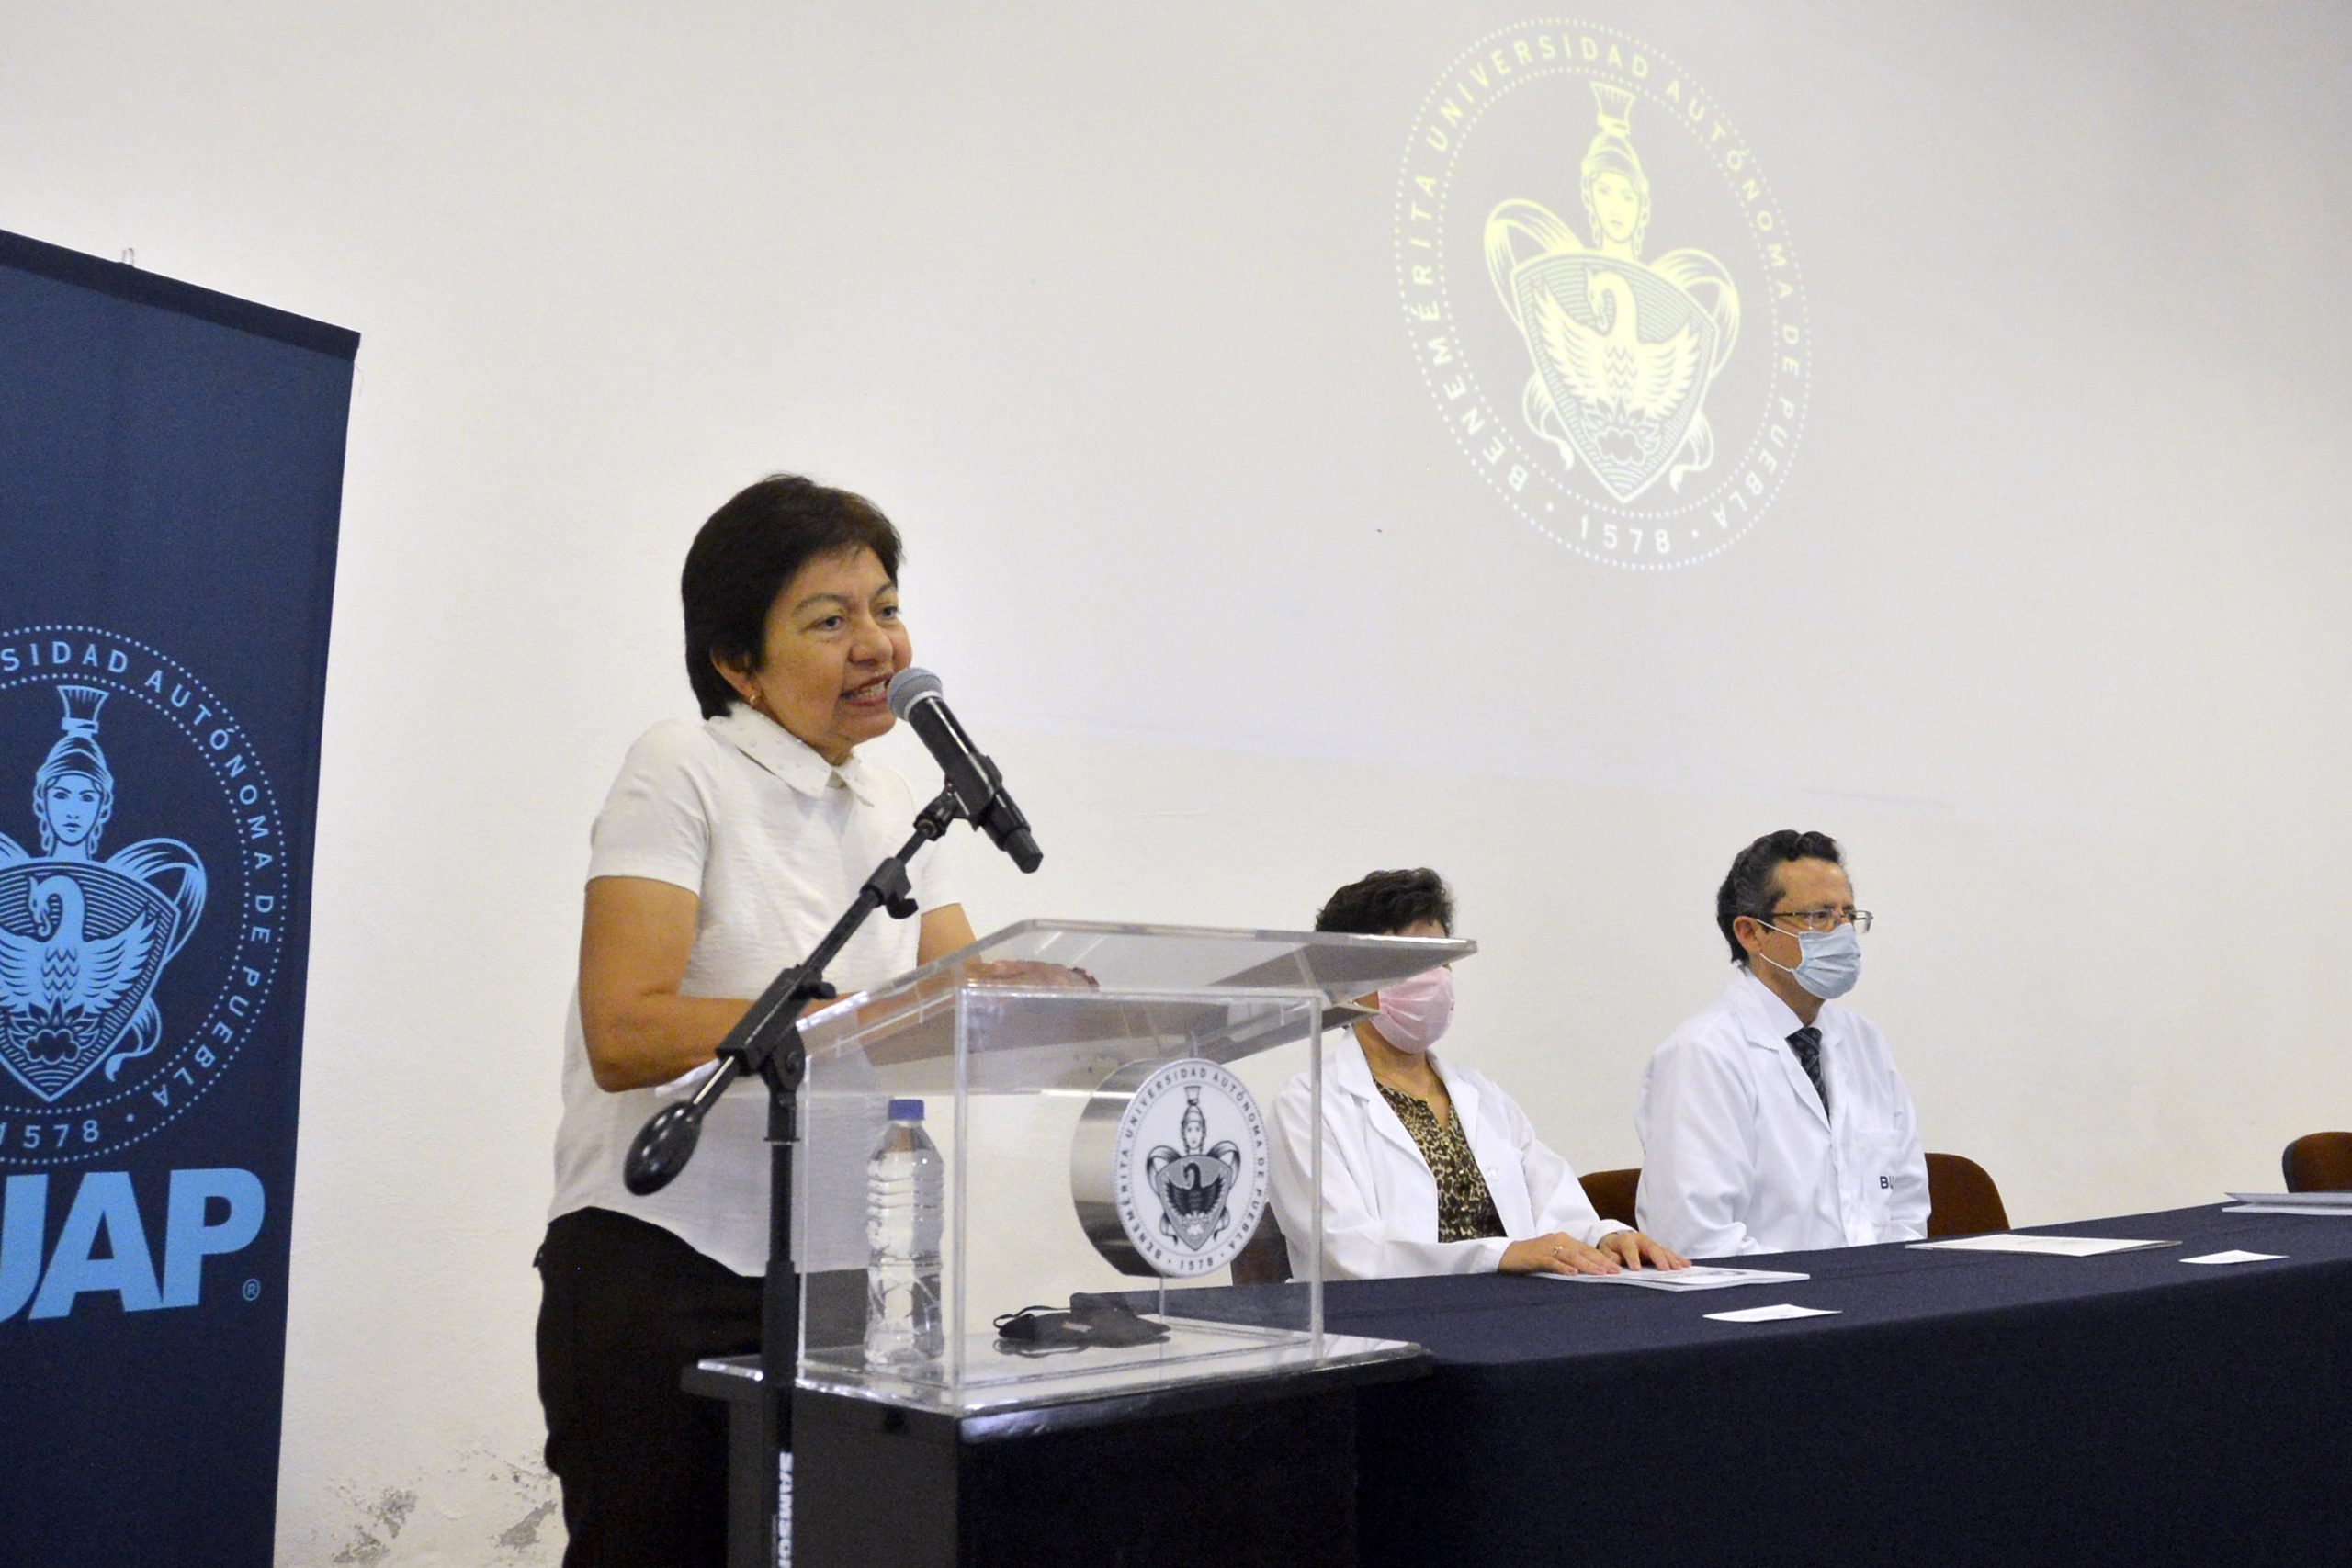 La Facultad de Medicina forma profesionales de la salud con sentido humano y compromiso social: Lilia Cedillo